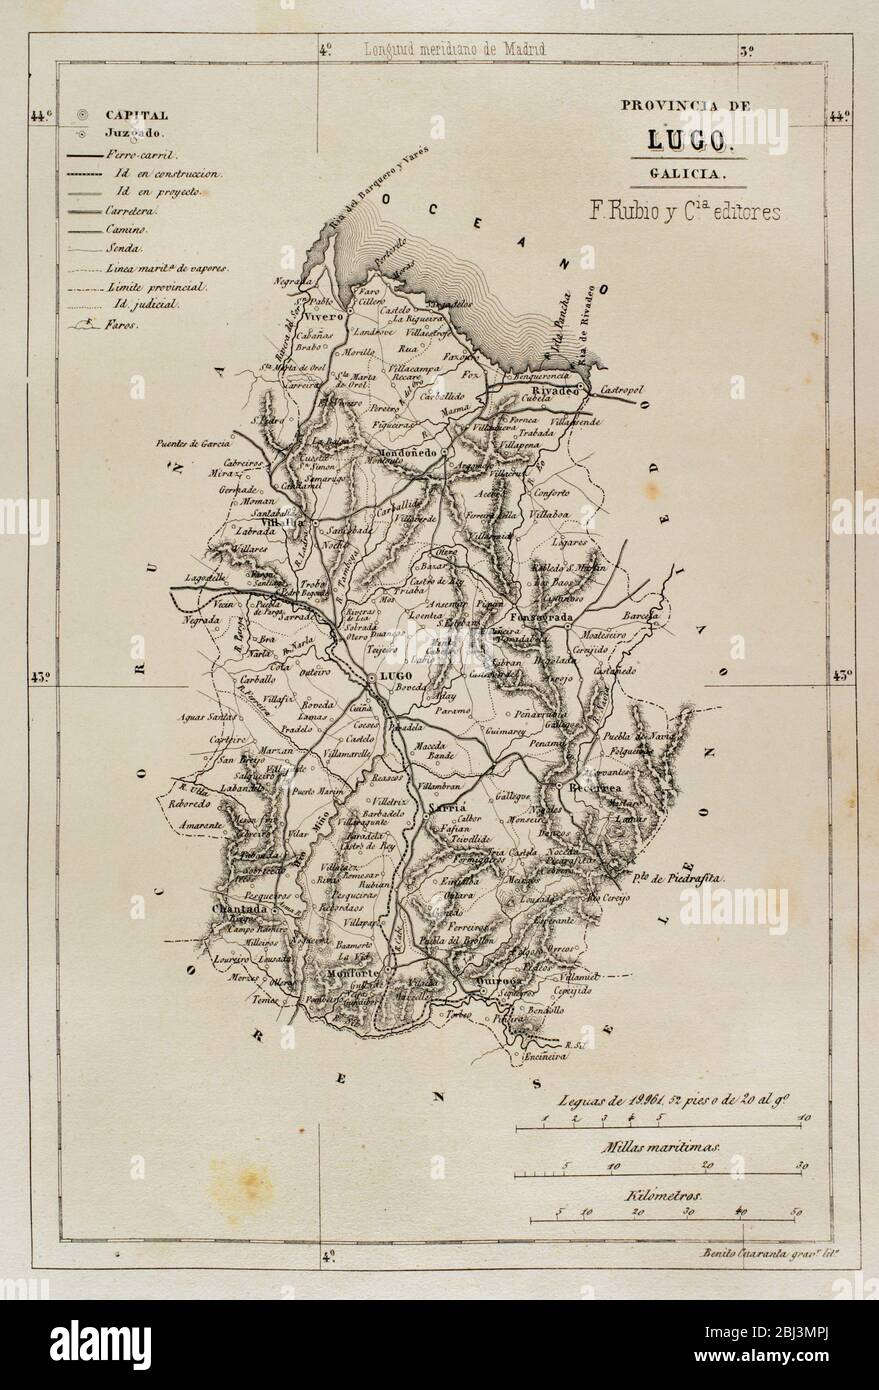 Spain, Galicia. Map of the Lugo province. Cronica General de España. Historia Ilustrada y Descriptiva de sus Provincias. Galicia, 1866. Stock Photo